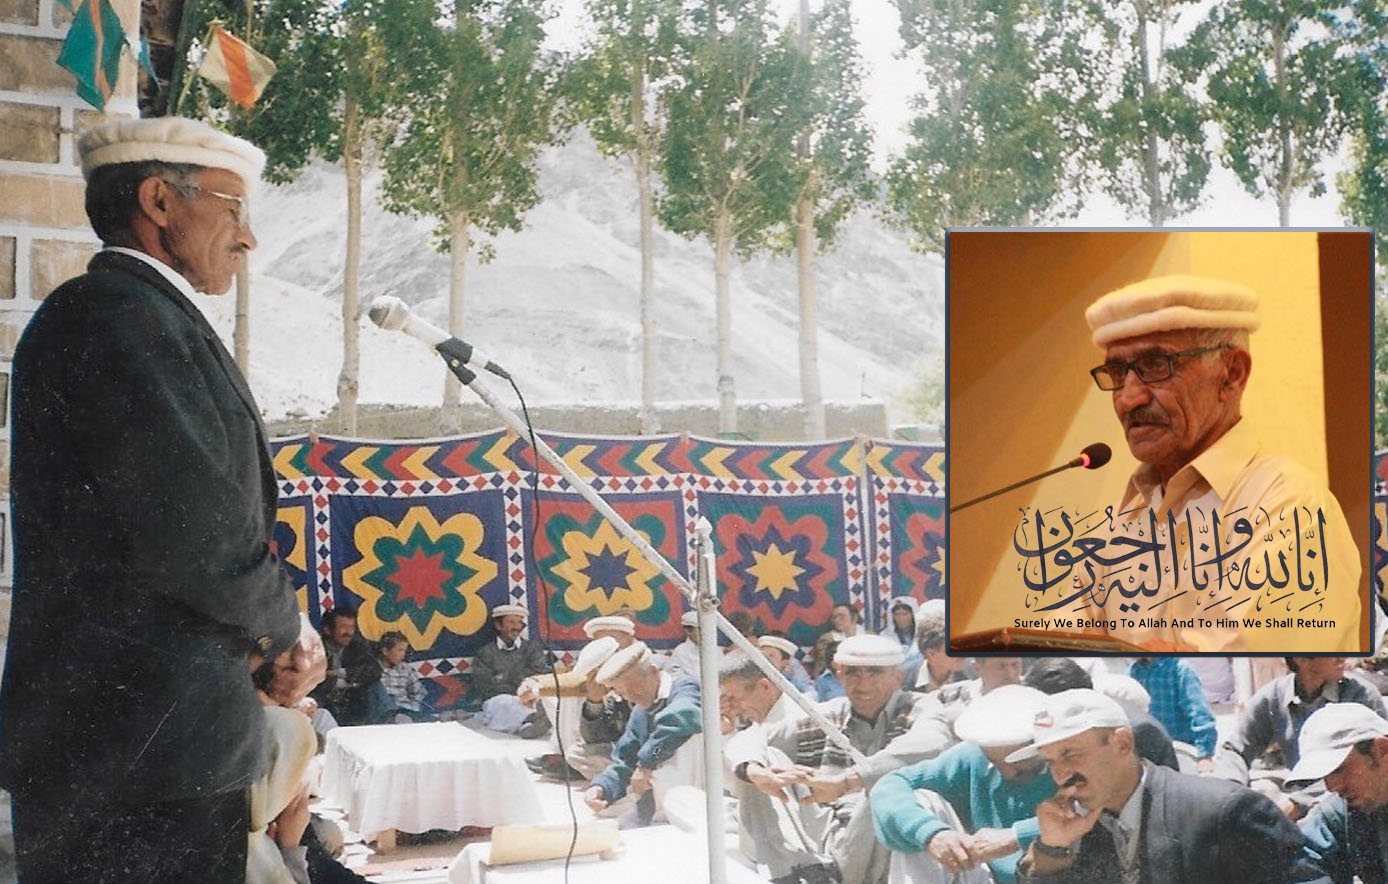 معروف معلم اور سماجی و مذہبی رہنما اُستاد بہرام بیگ چپورسن گوجال میں انتقال کر گئے